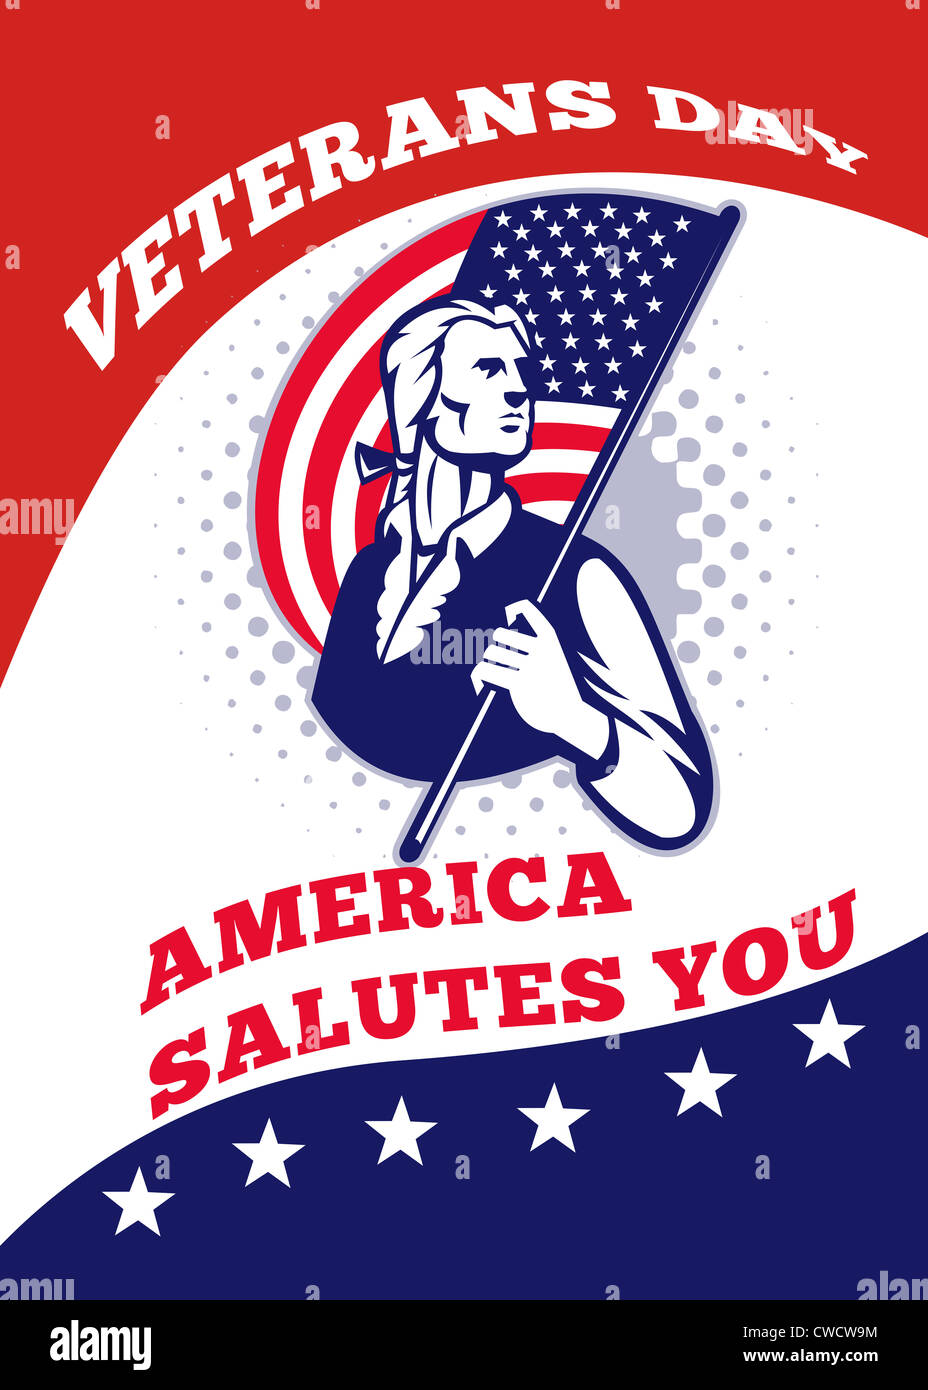 Carte de vœux de l'affiche illustration d'un soldat révolutionnaire minuteman patriot tenant un drapeau américain stars and stripes Banque D'Images